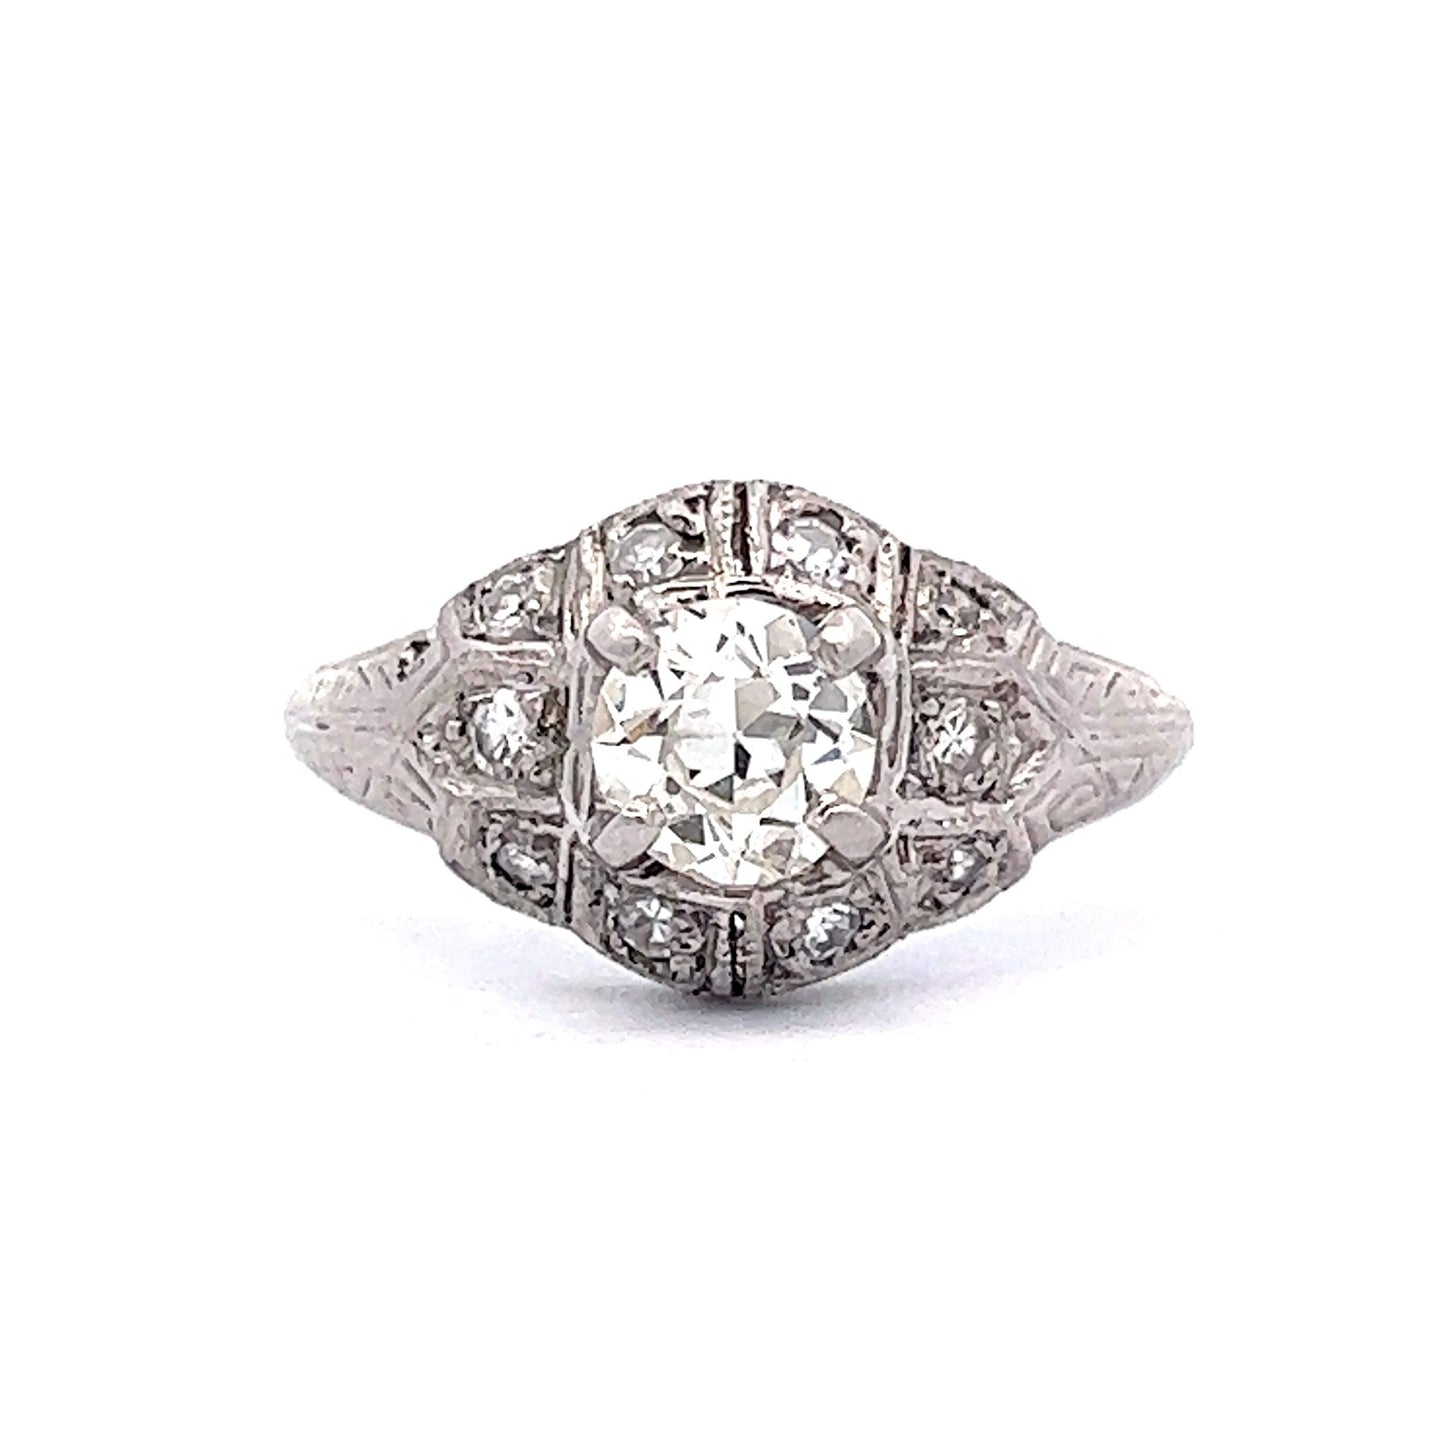 1920's Old European Diamond Engagement Ring in Platinum